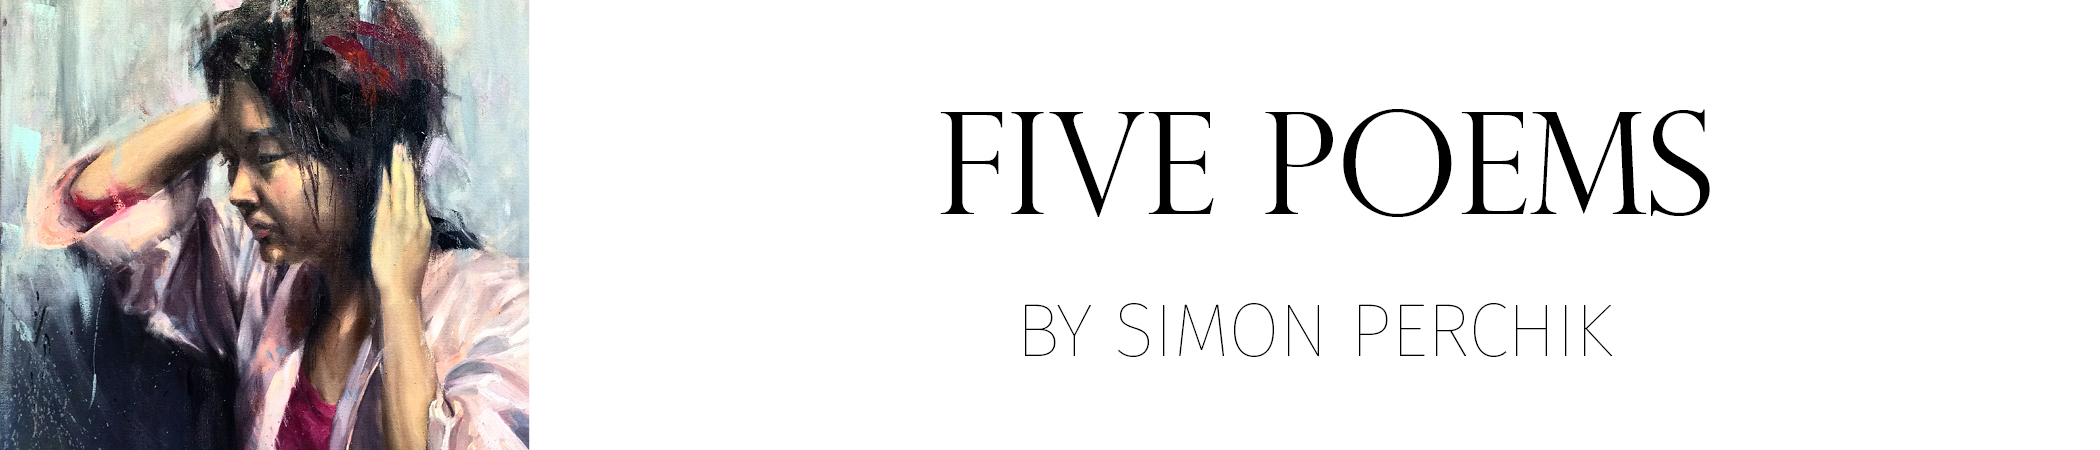 Five Poems by Simon Perchik